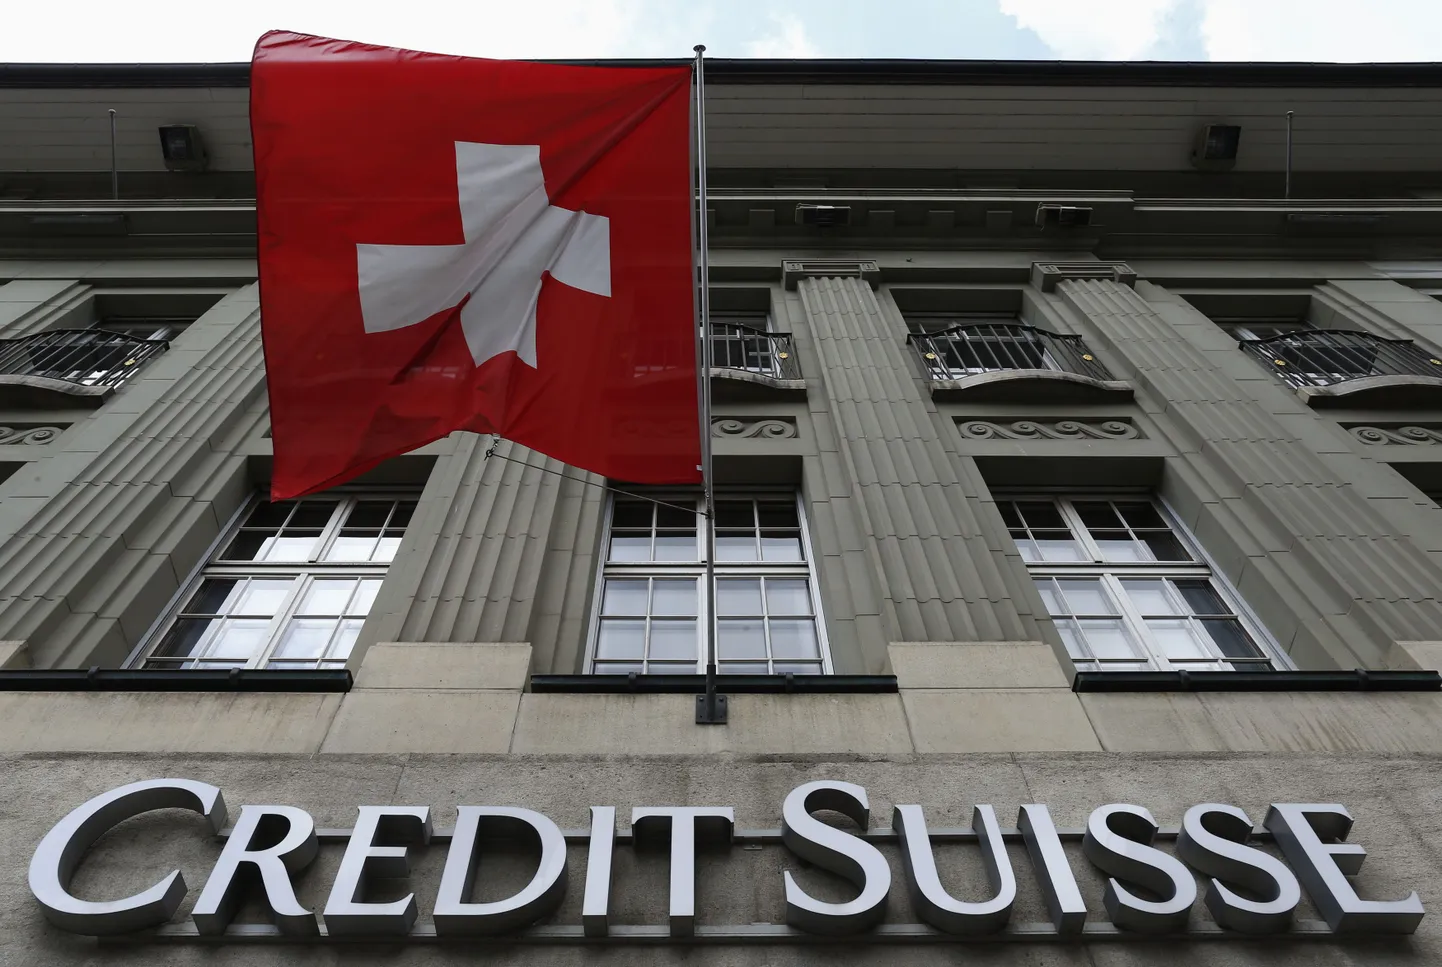 Kodanikupalka hakkavad saama ka pankurid. Suurpanga Credit Suisse peahoone Bernis.